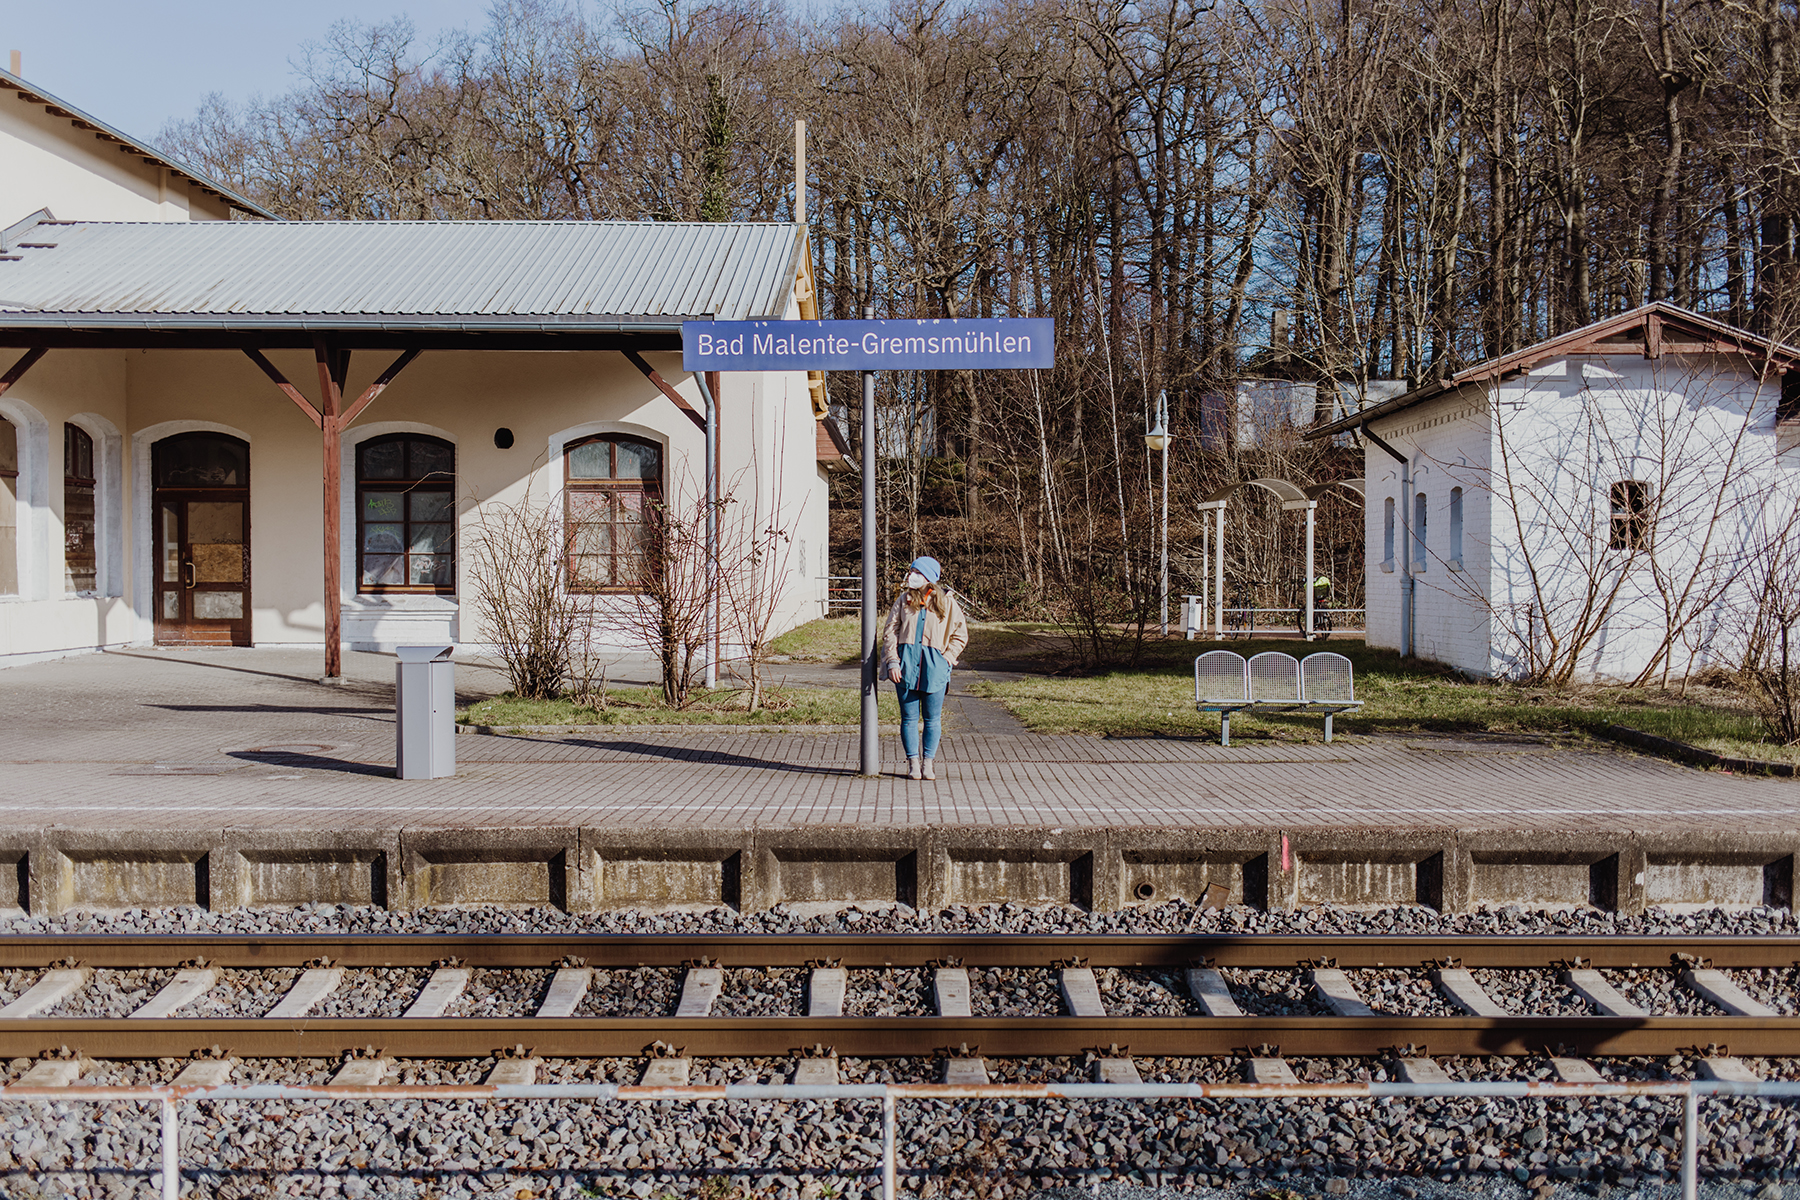 Bahnhof Bad Malente-Gremsmühlen